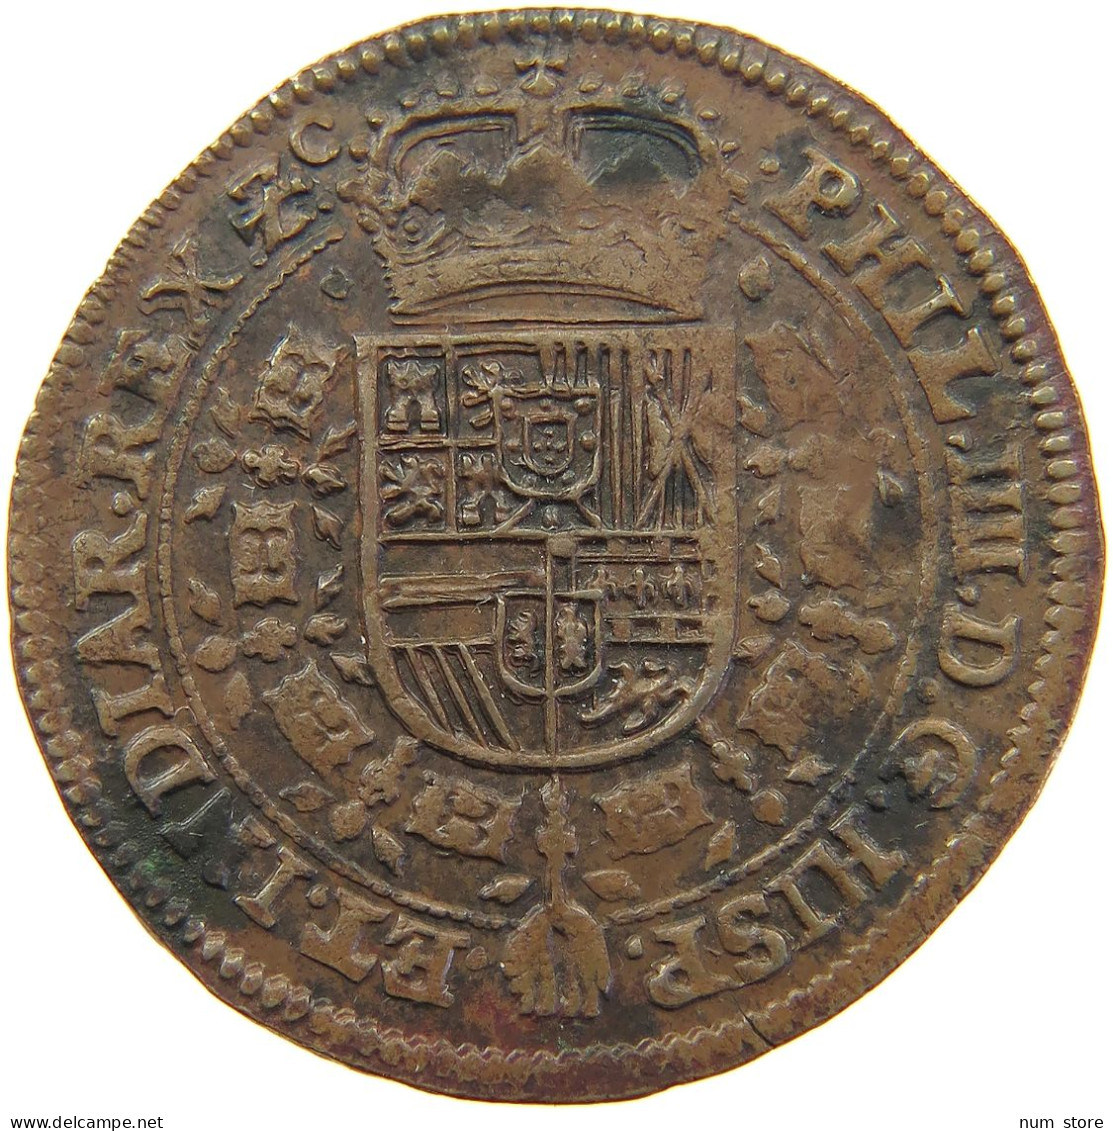 SPANISH NETHERLANDS RECHENPFENNIG JETON 1648 FELIPE IV. 1621-1665 #MA 068951 - Spanish Netherlands